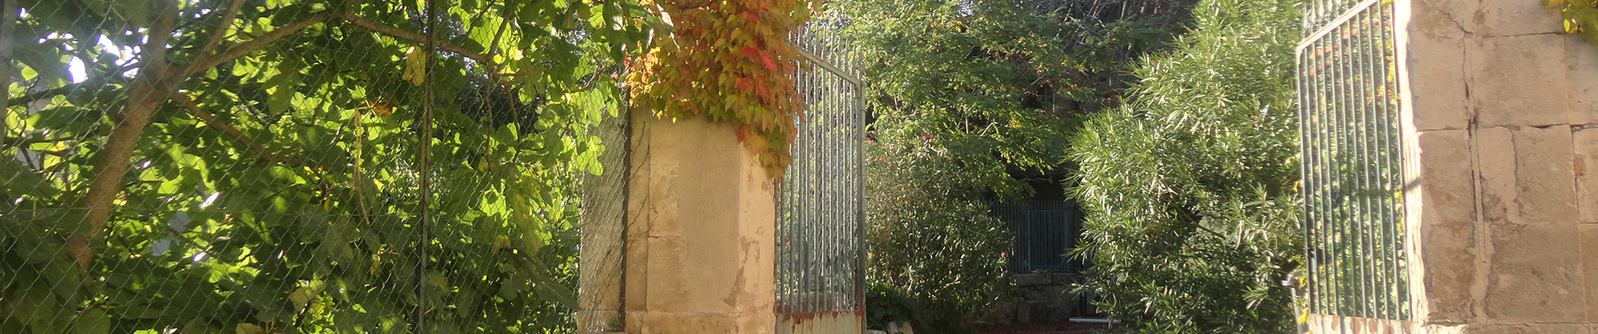 Domaine Saint Julia, degustation de vins du pays d'oc, Murviel les Montpellier